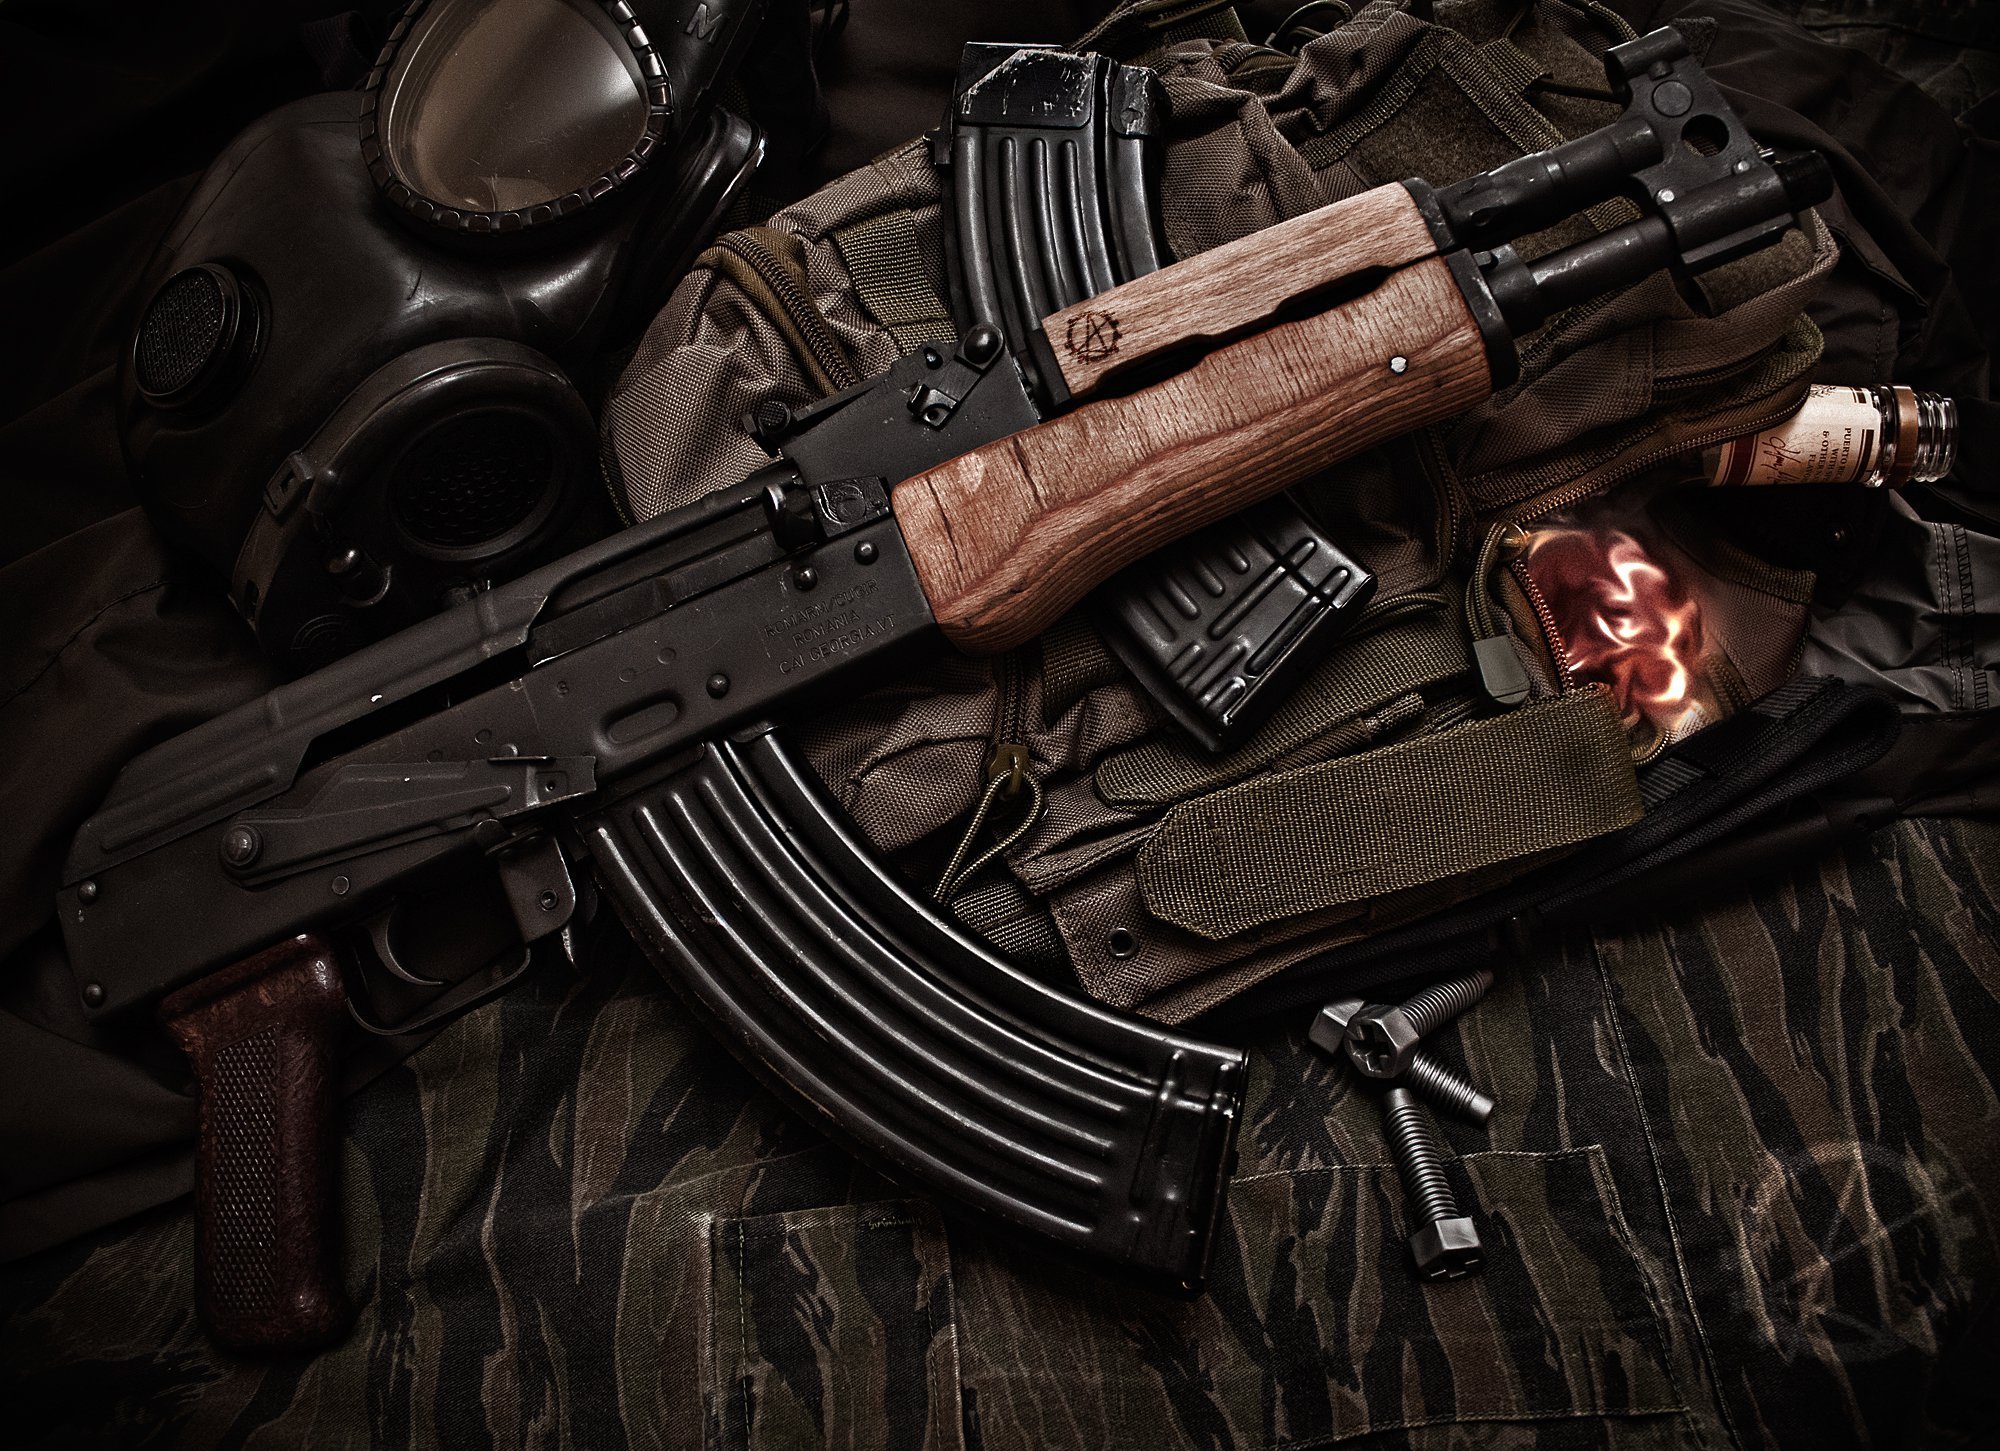 Akm Assault Rifle HD Wallpaper Background Image